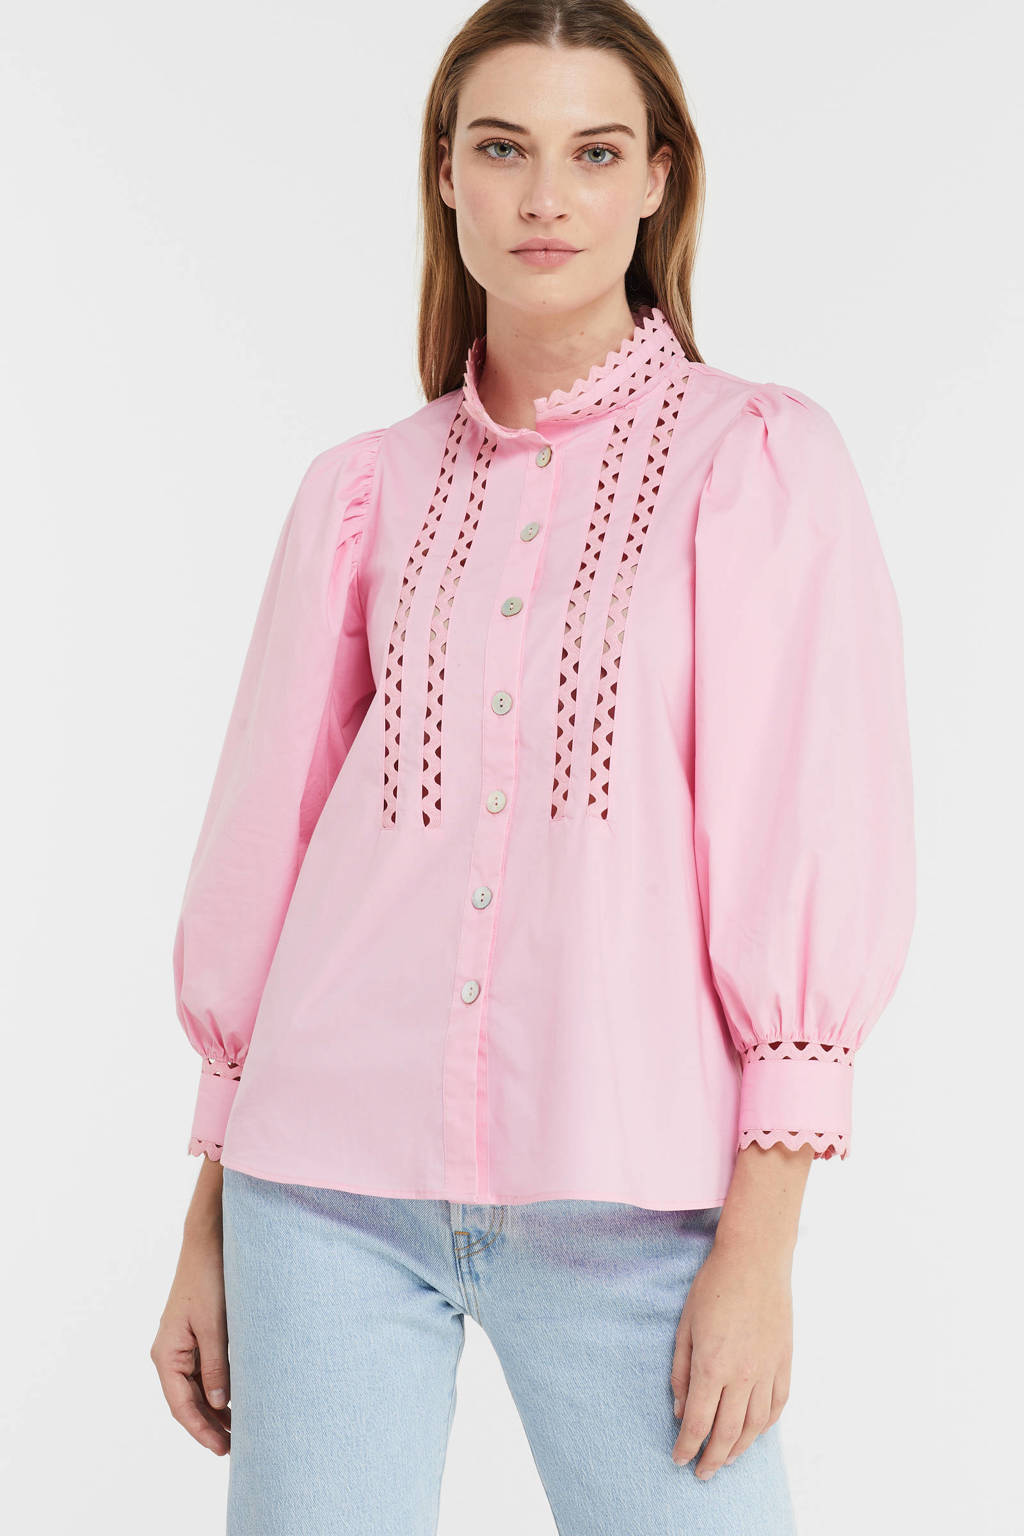 Roze dames Esqualo blouse van katoen met driekwart mouwen, opstaande kraag, knoopsluiting en ballonmouwen